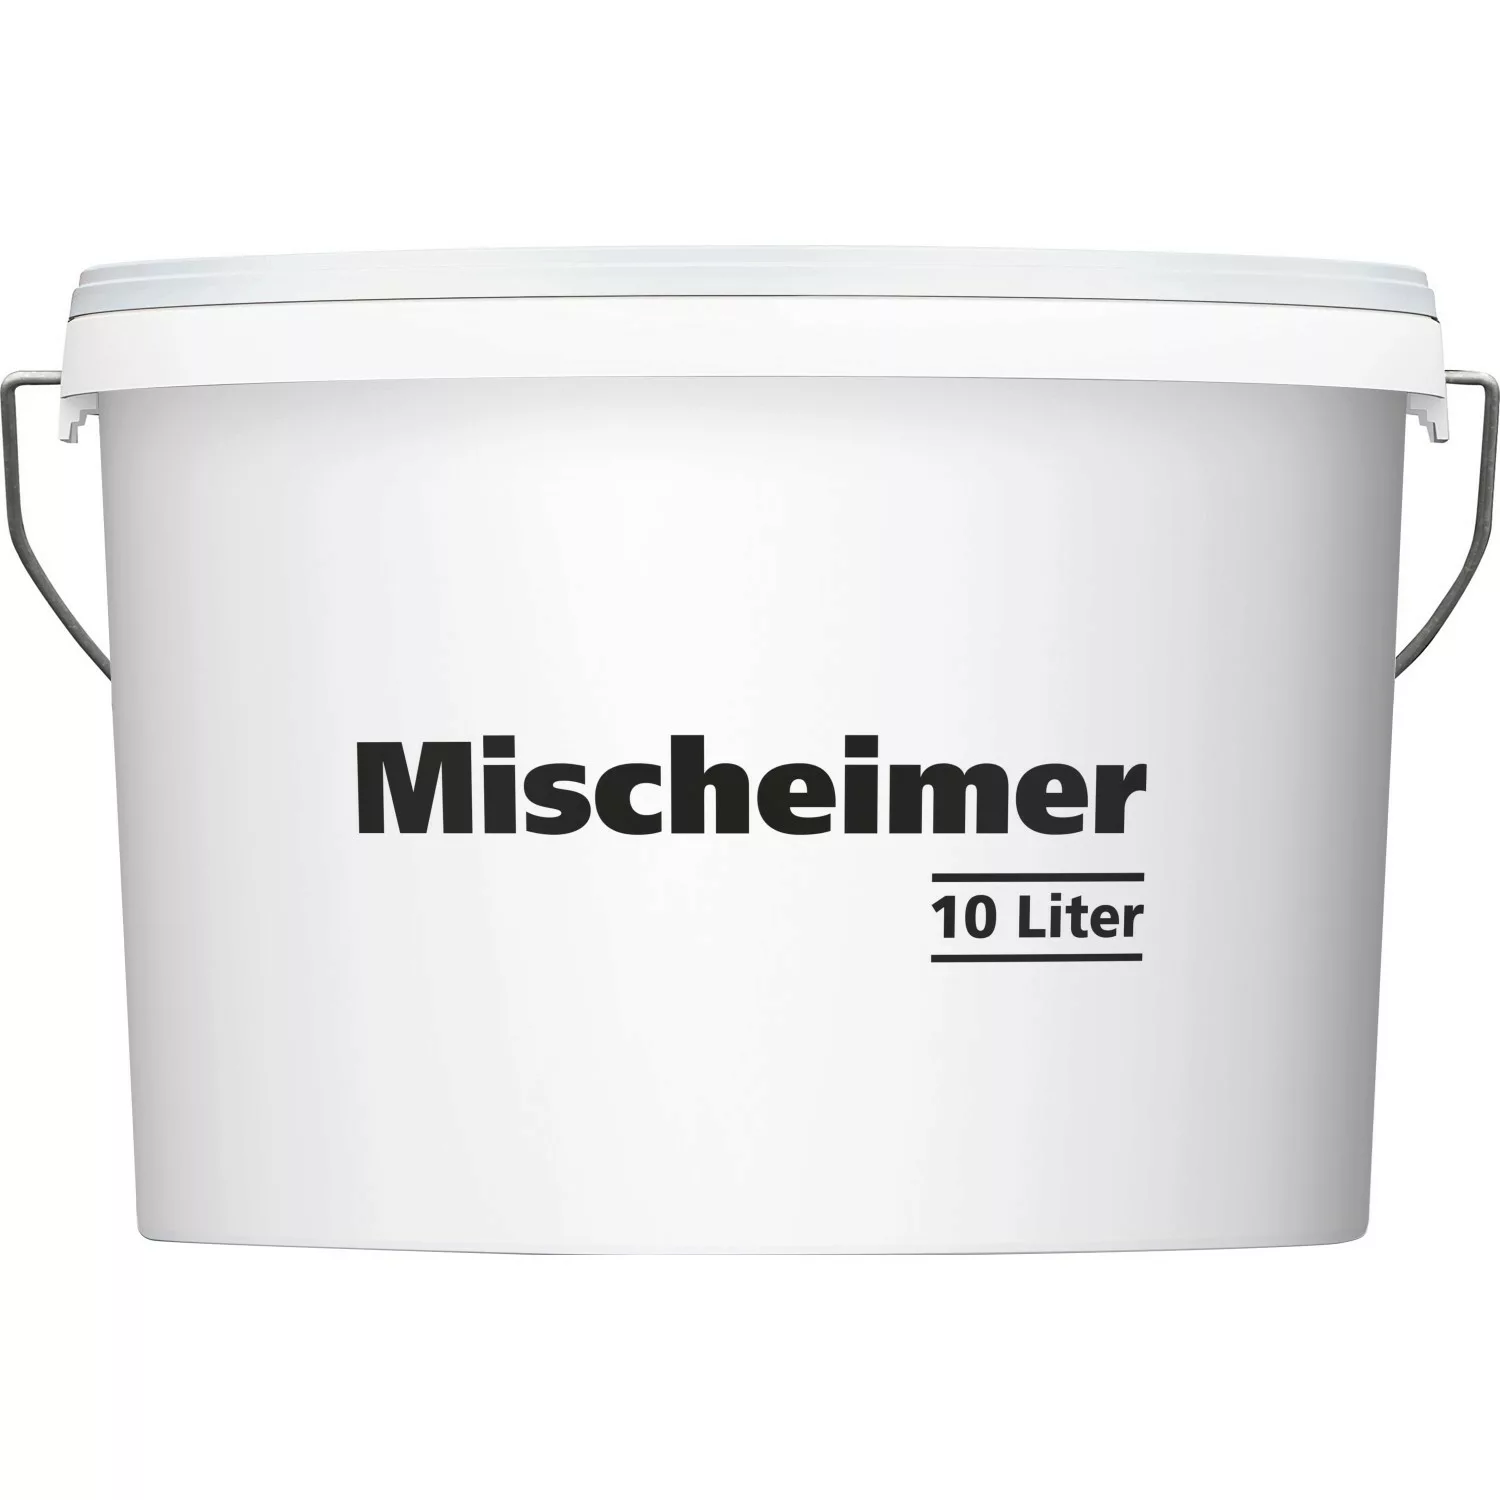 Mischeimer 10 Liter günstig online kaufen